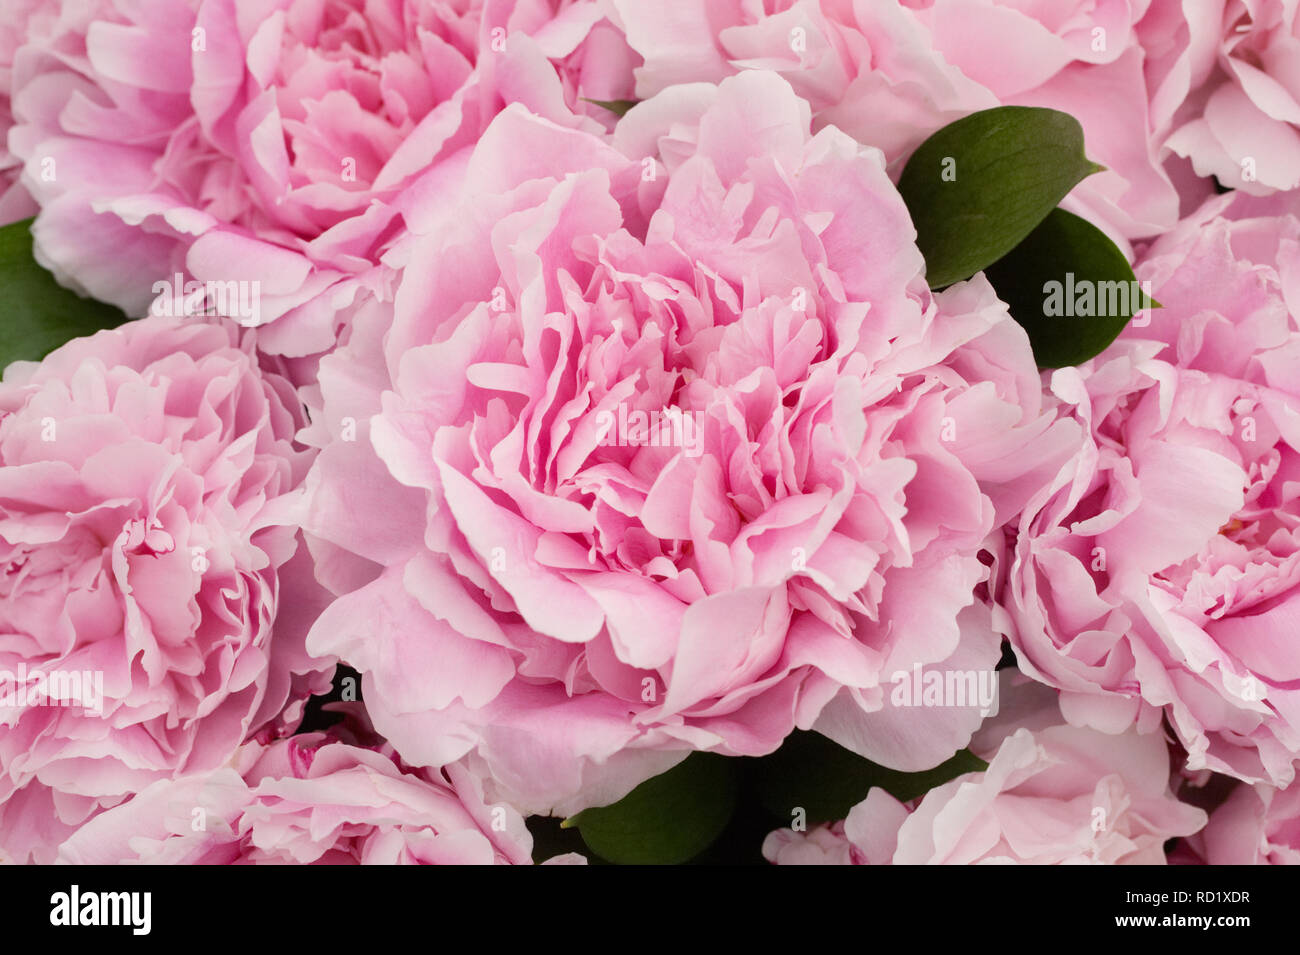 Paeonia 'Sarah Bernhardt' flowers. Stock Photo